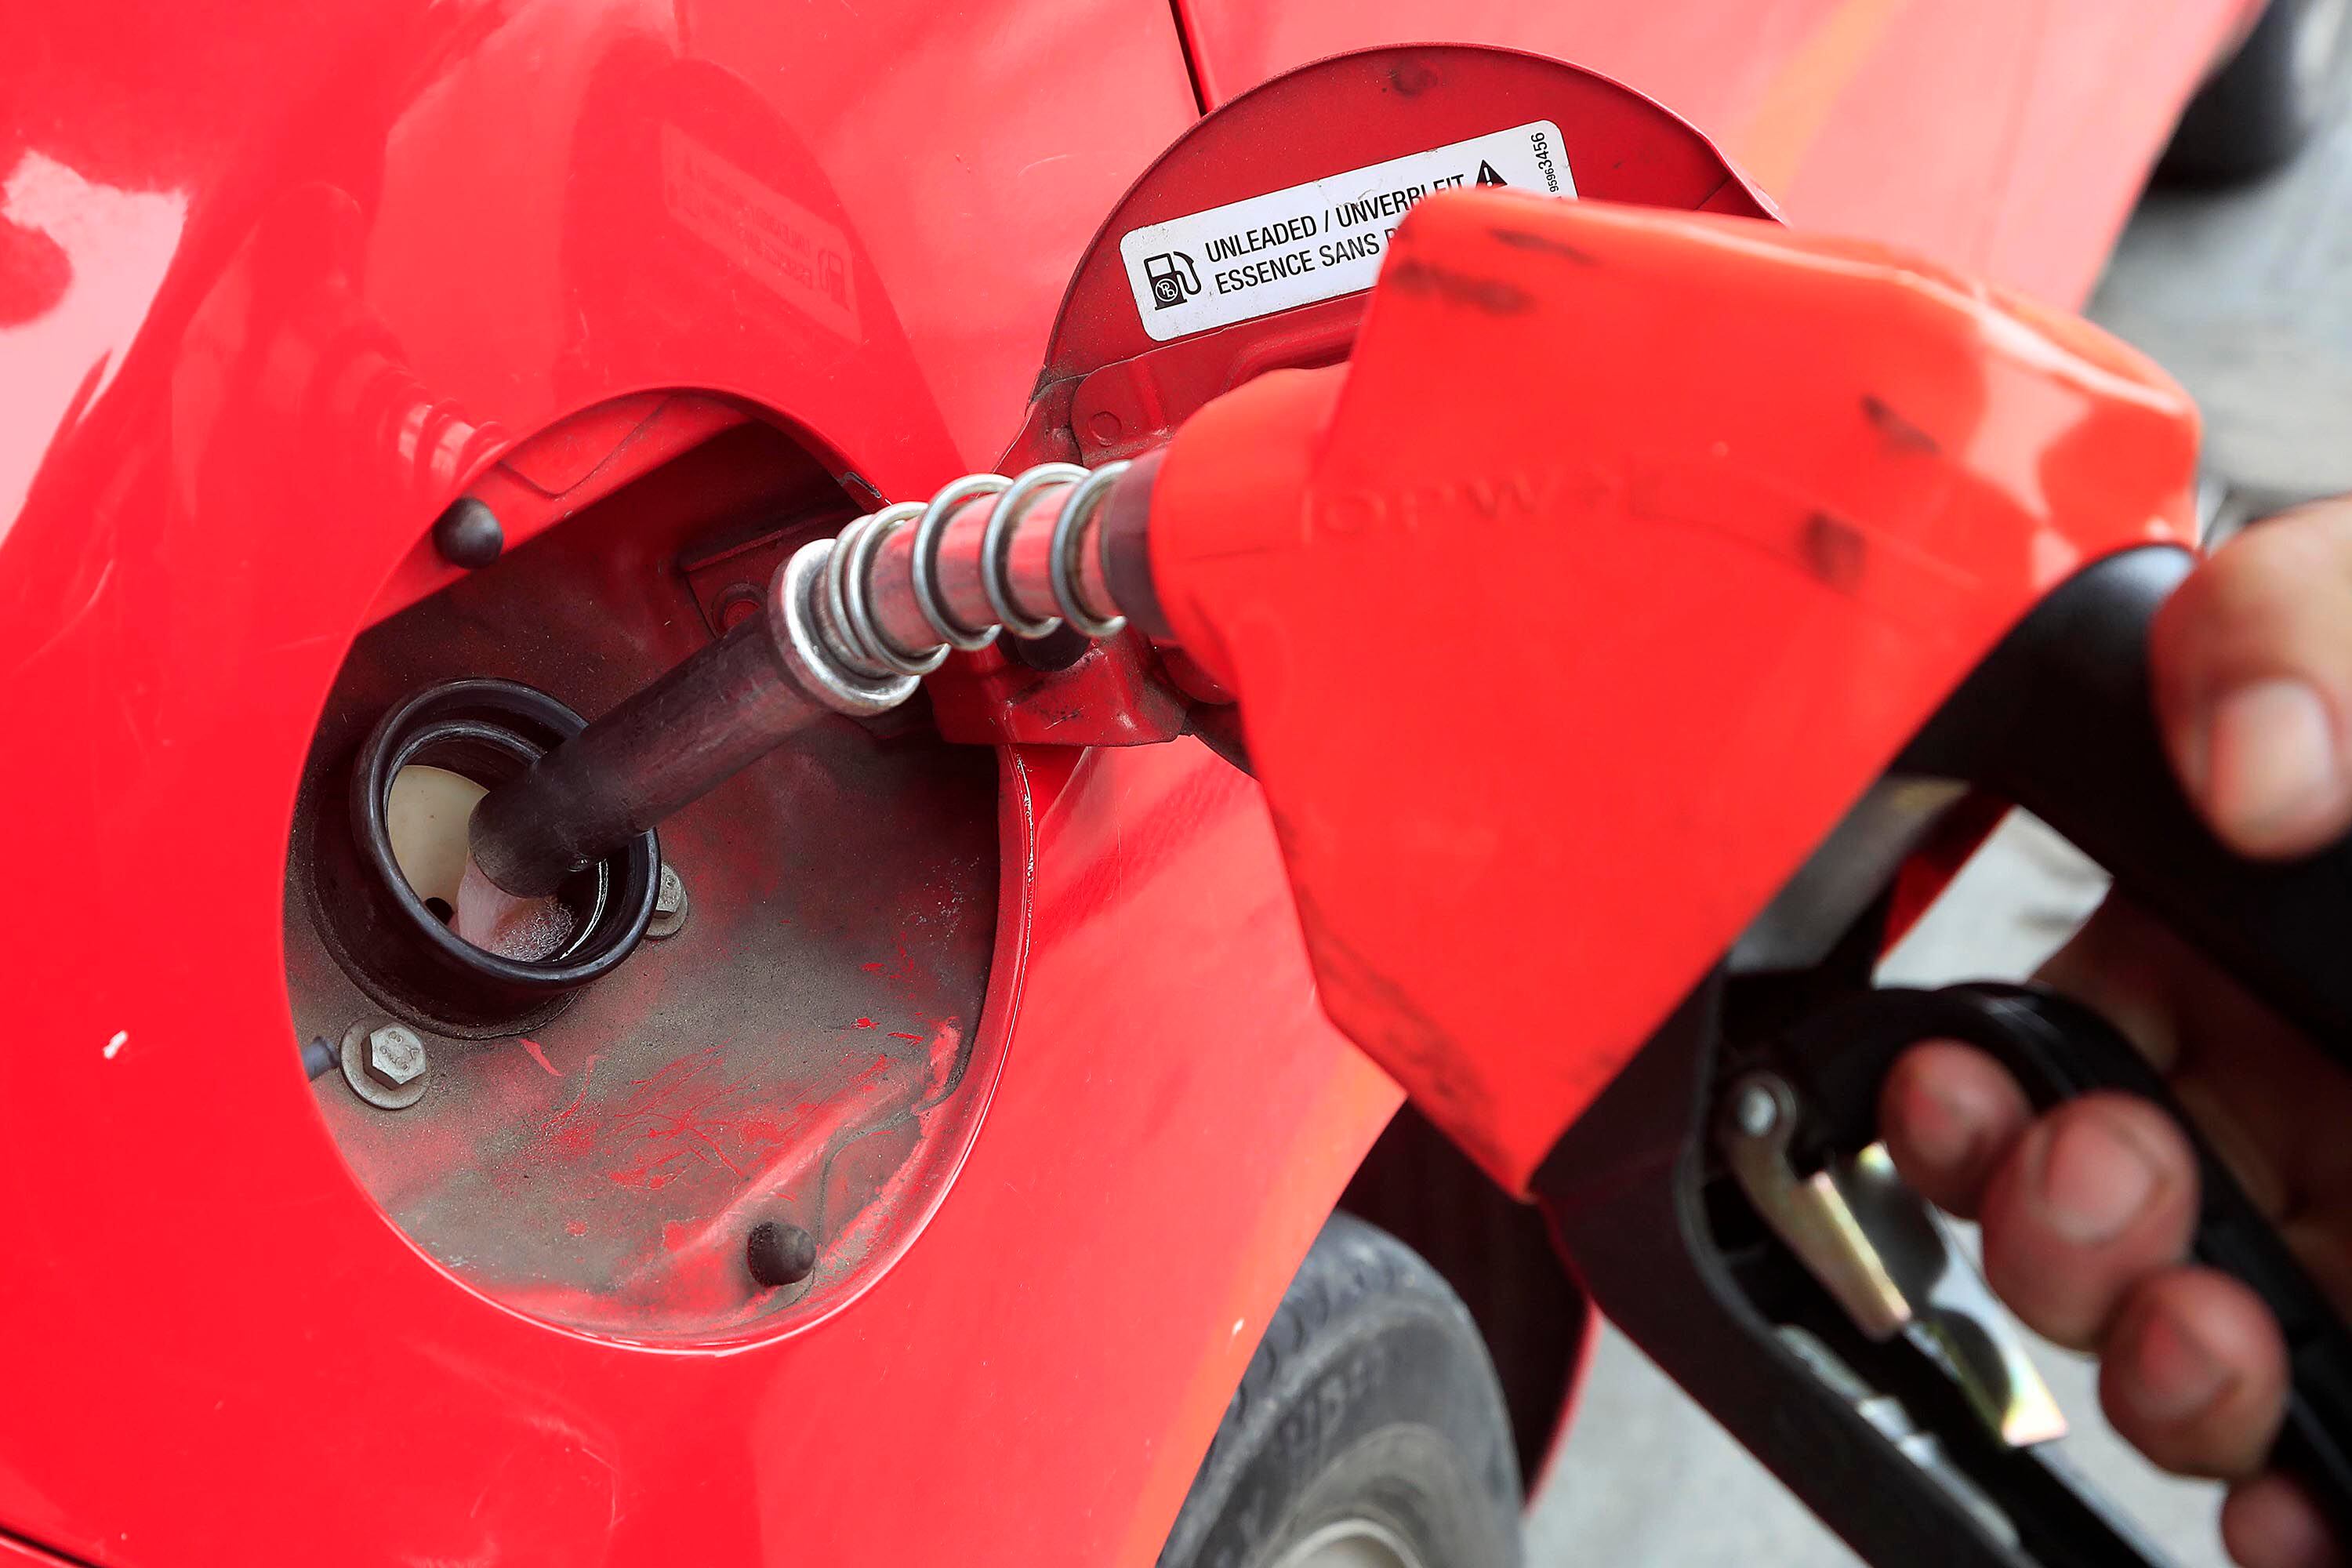 El precio de los combustibles con más rebaja prevista es la gasolina regular cuyo precio pasará de. Fotografía: